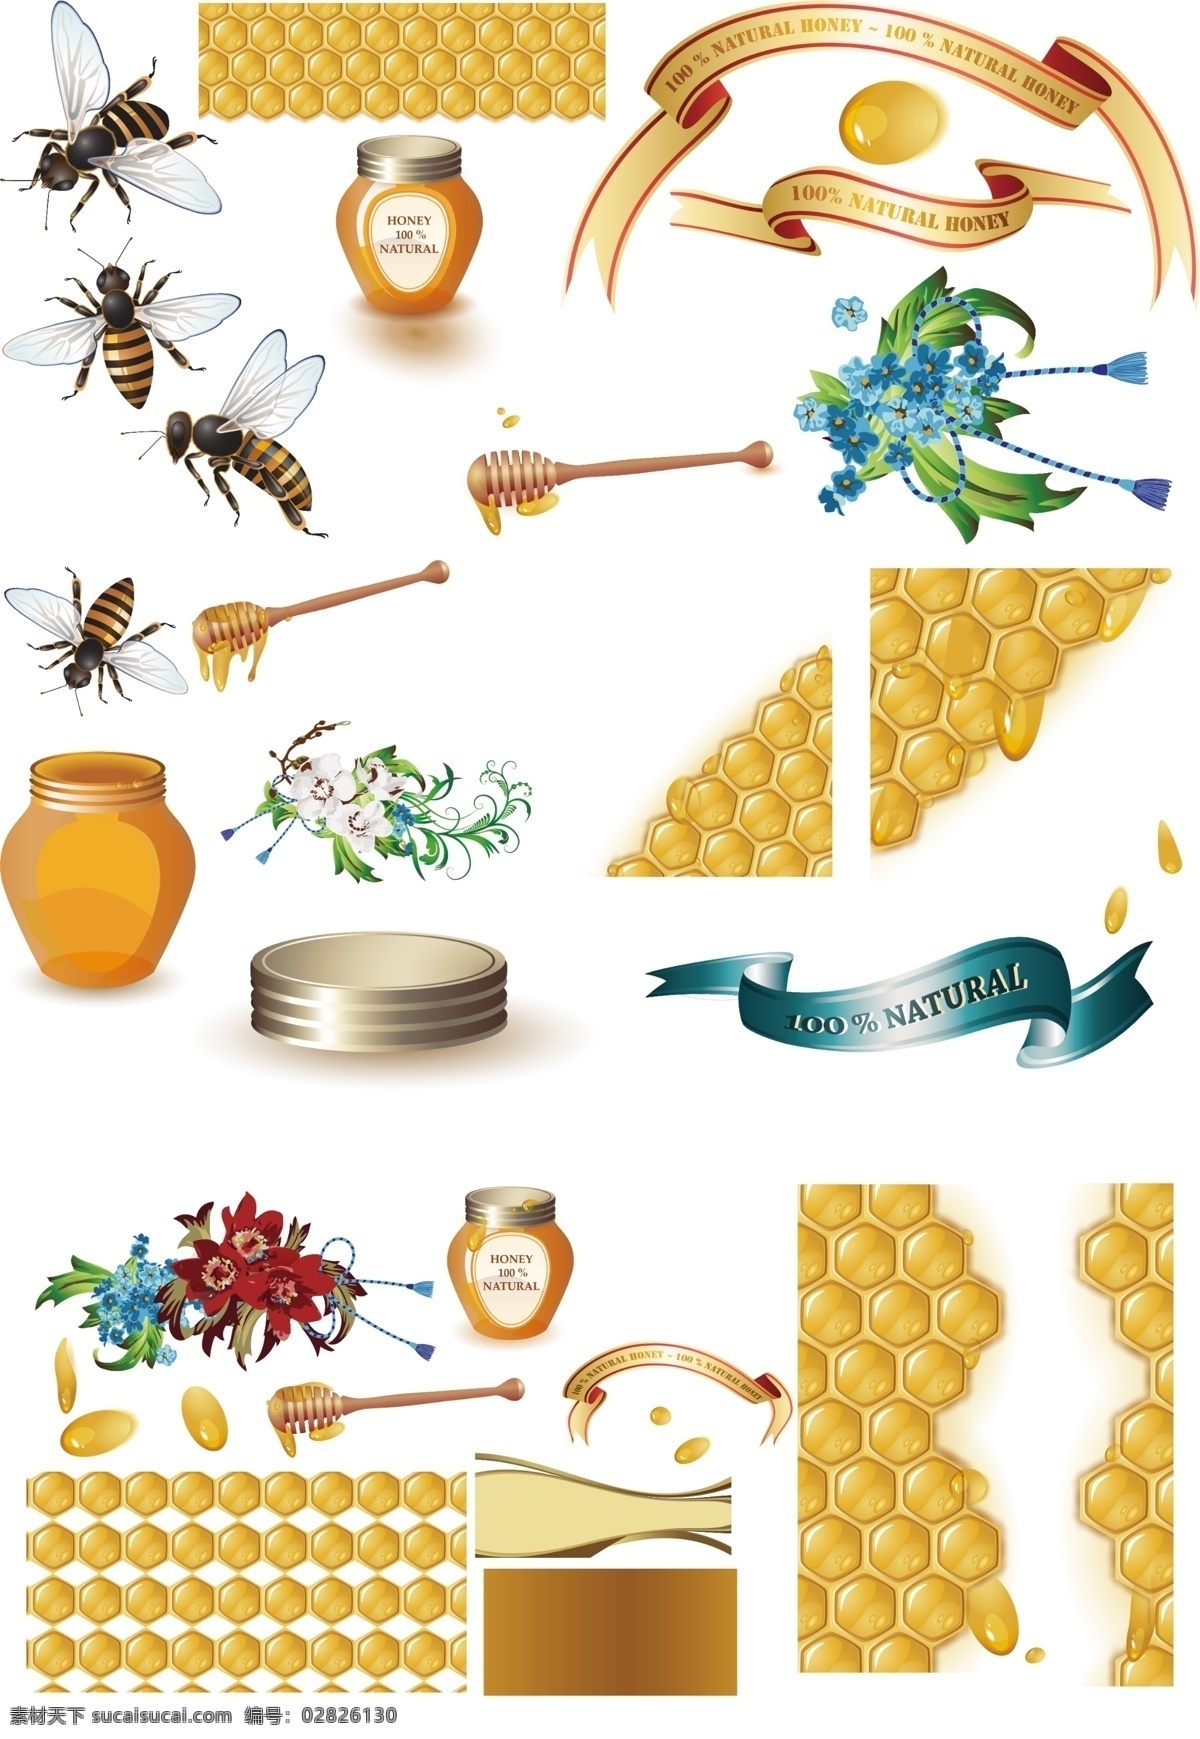 背景 底纹 蜂巢 蜂窝 花卉 金色 昆虫 梦幻 蜜蜂和蜂蜜 糖罐 蜂蜜 蜜蜂 矢量 模板下载 蜂蜜蜂巢蜜蜂 蜜蜂主题 psd源文件